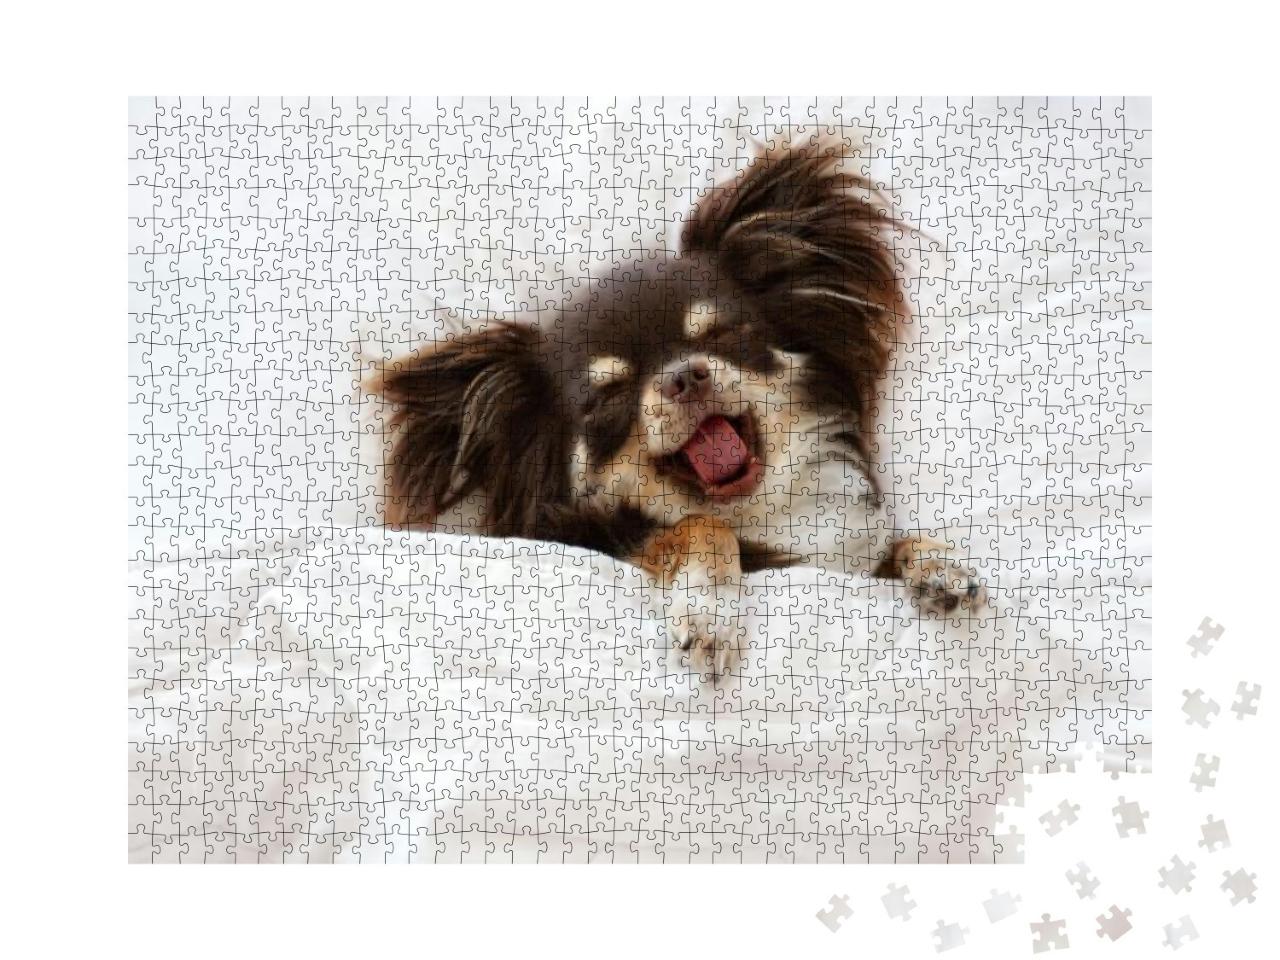 Puzzle 1000 Teile „Chihuahua-Hund schläft auf einem Kissen im Bett“